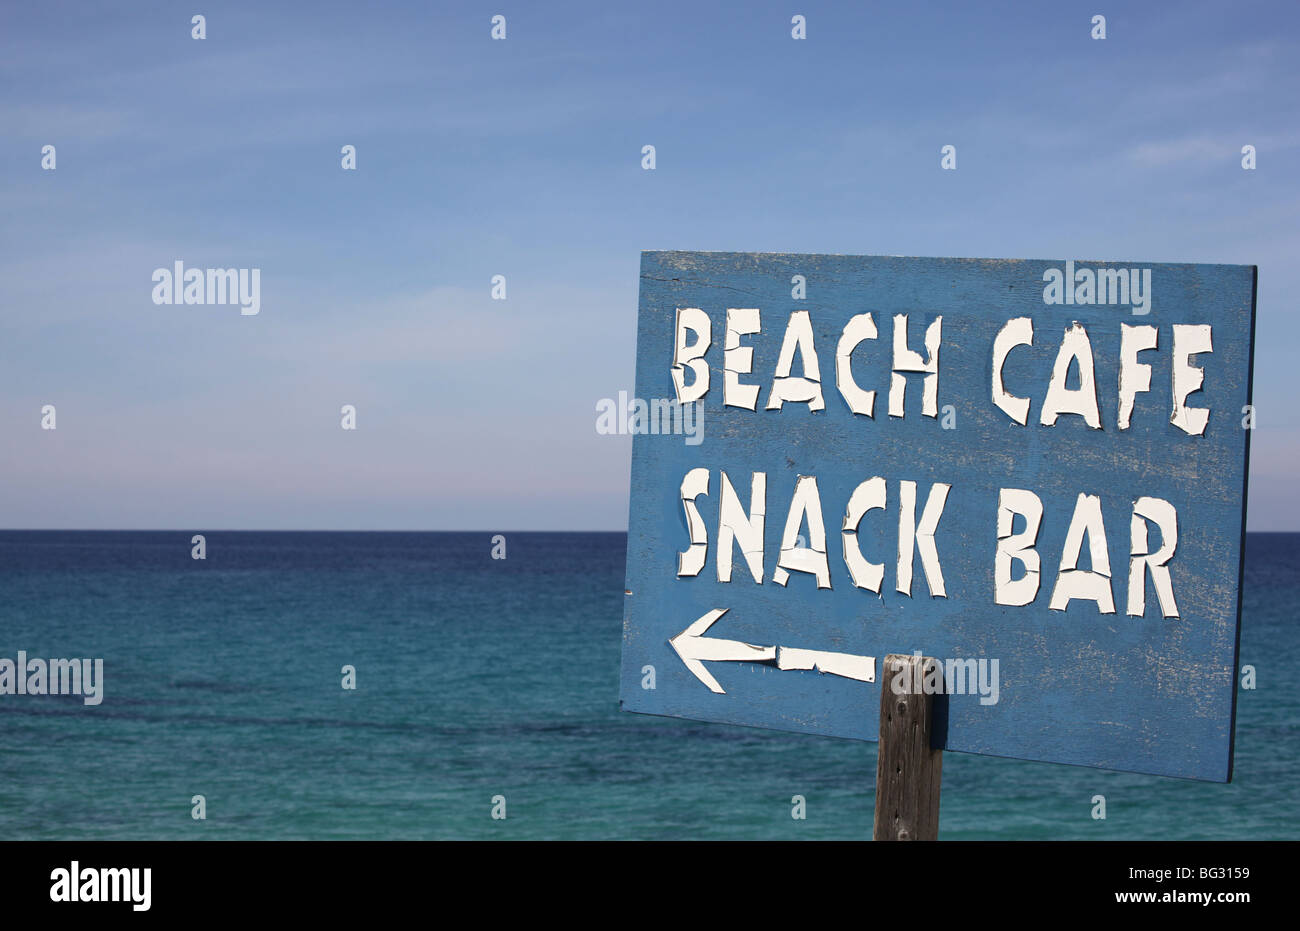 Inscrivez-battues météo à les orienter vers une plage café et snack-bar à côté de la mer Banque D'Images